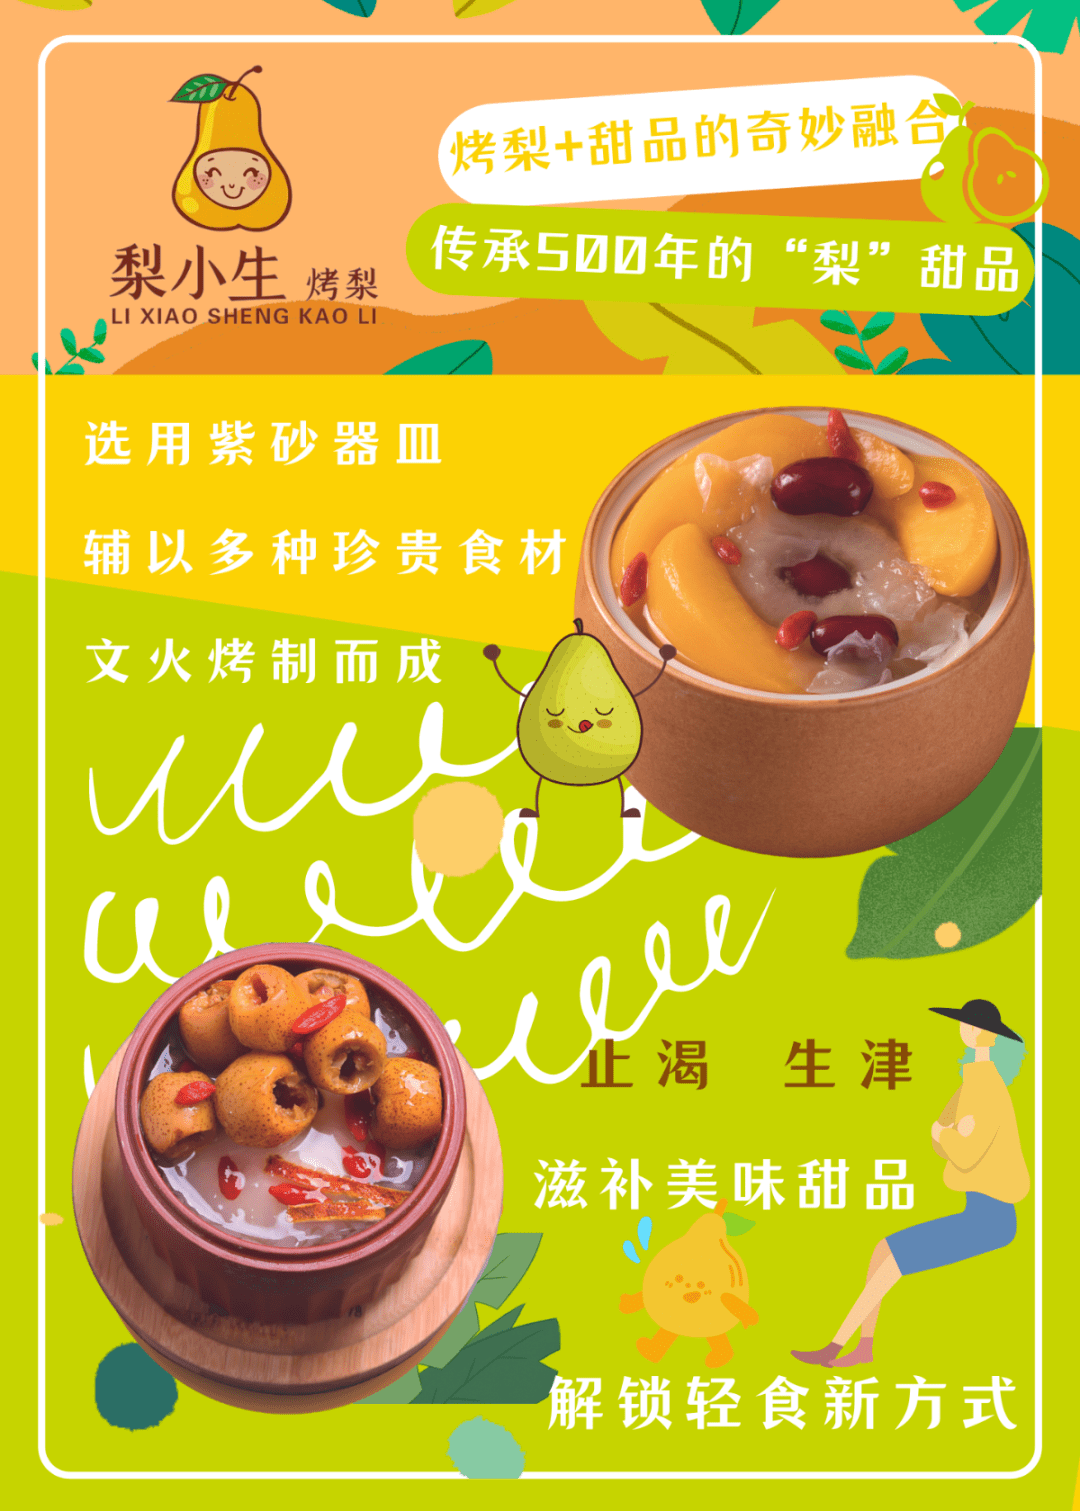 朝阳门益田丨古法烤梨健康甜品仅需199元吃梨小生烤梨超值双人餐绵糯